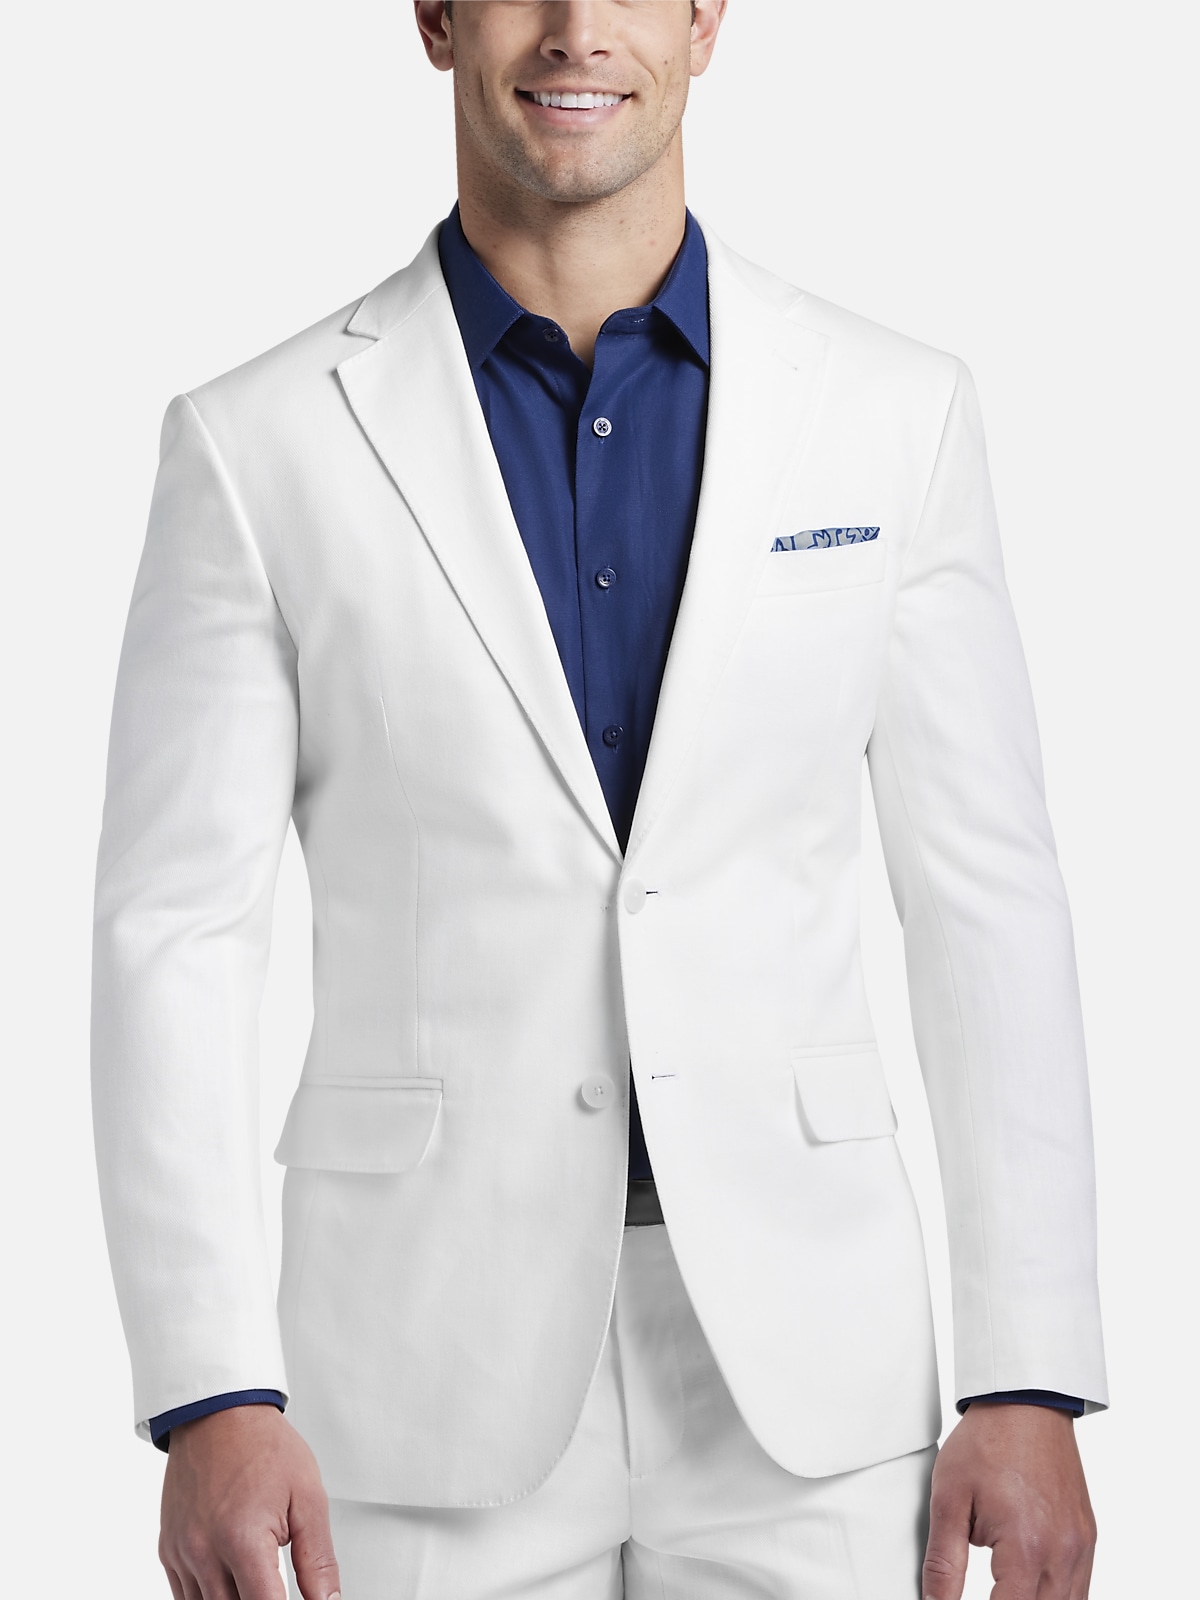 JOE Joseph Abboud Slim Fit Linen Blend Suit Separates Jacket | All ...